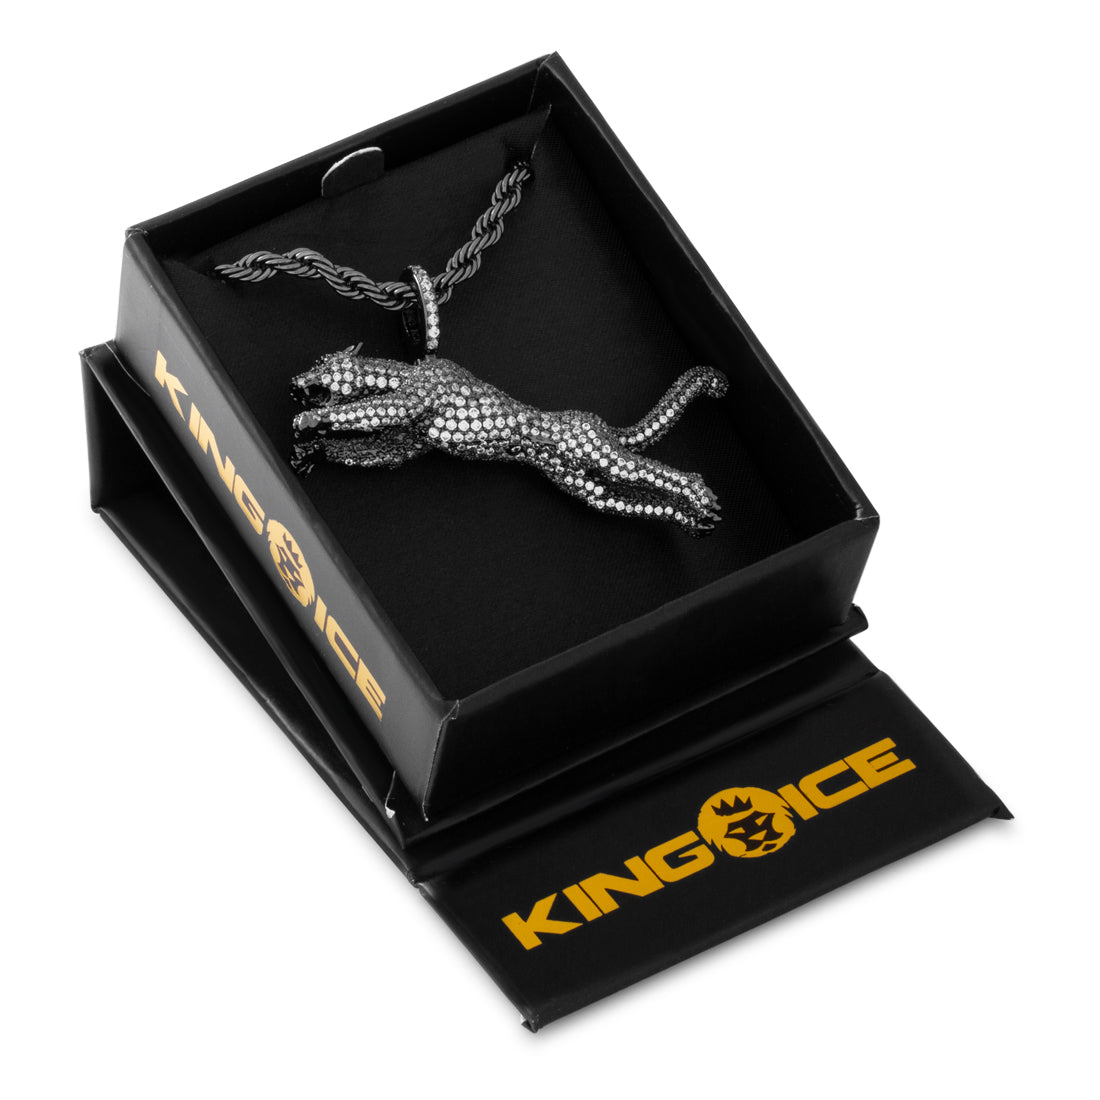 Jaguar Necklace